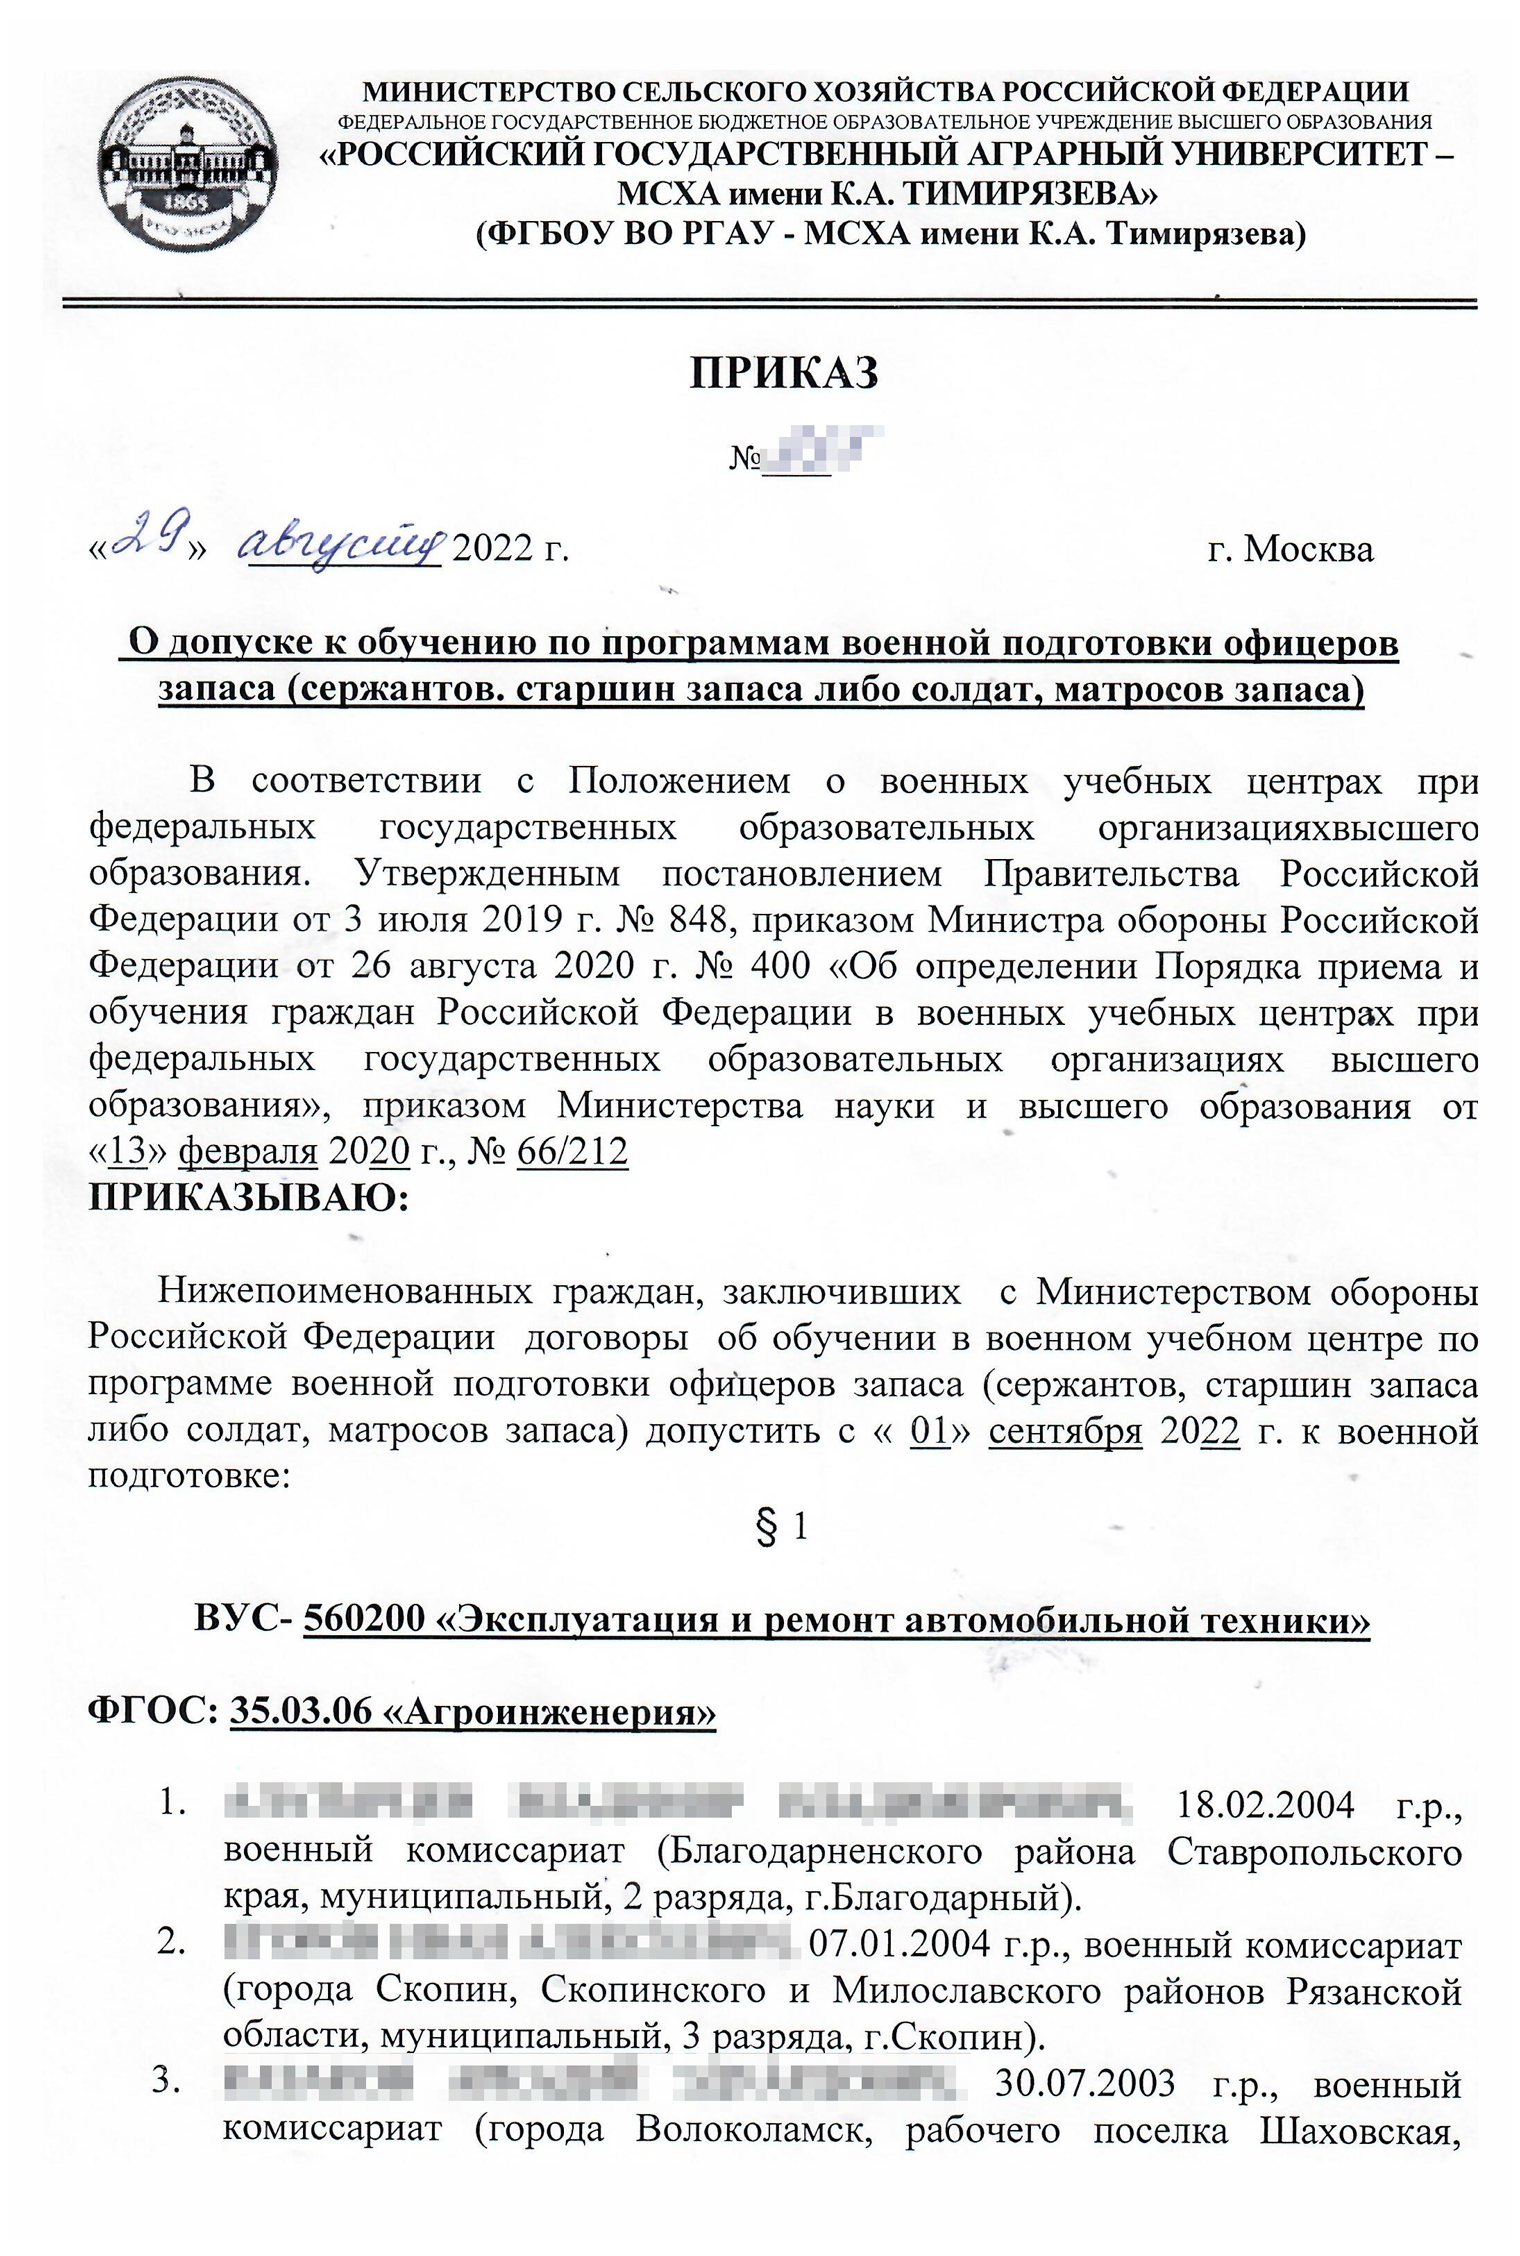 Пример приказа о зачислении студентов в ВУЦ. Источник: vk.timacad.ru